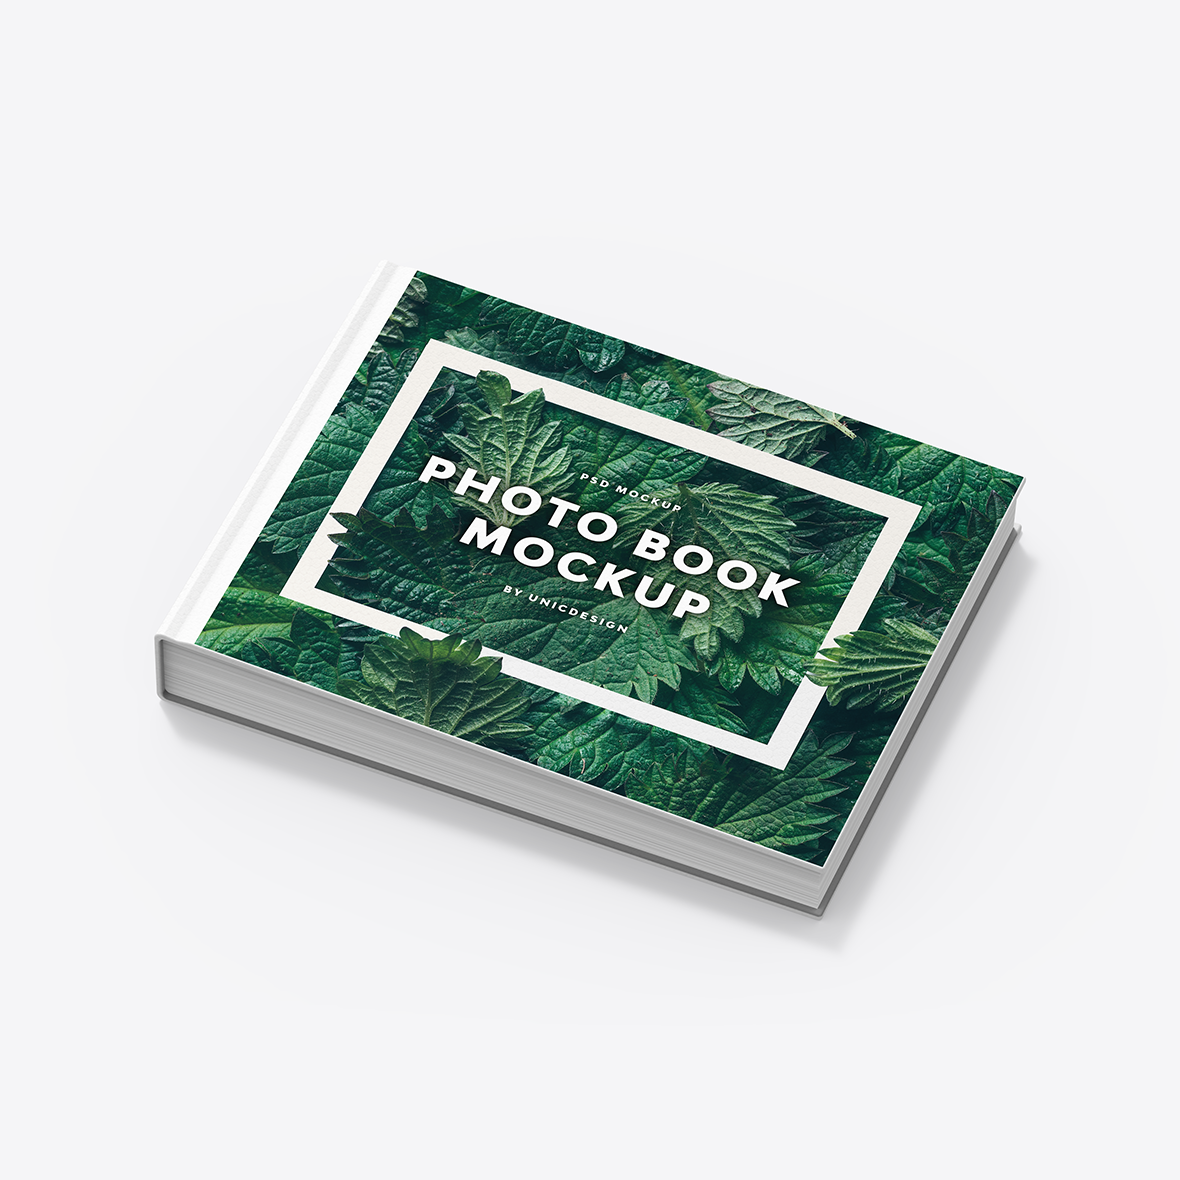 Photo Book Mockup